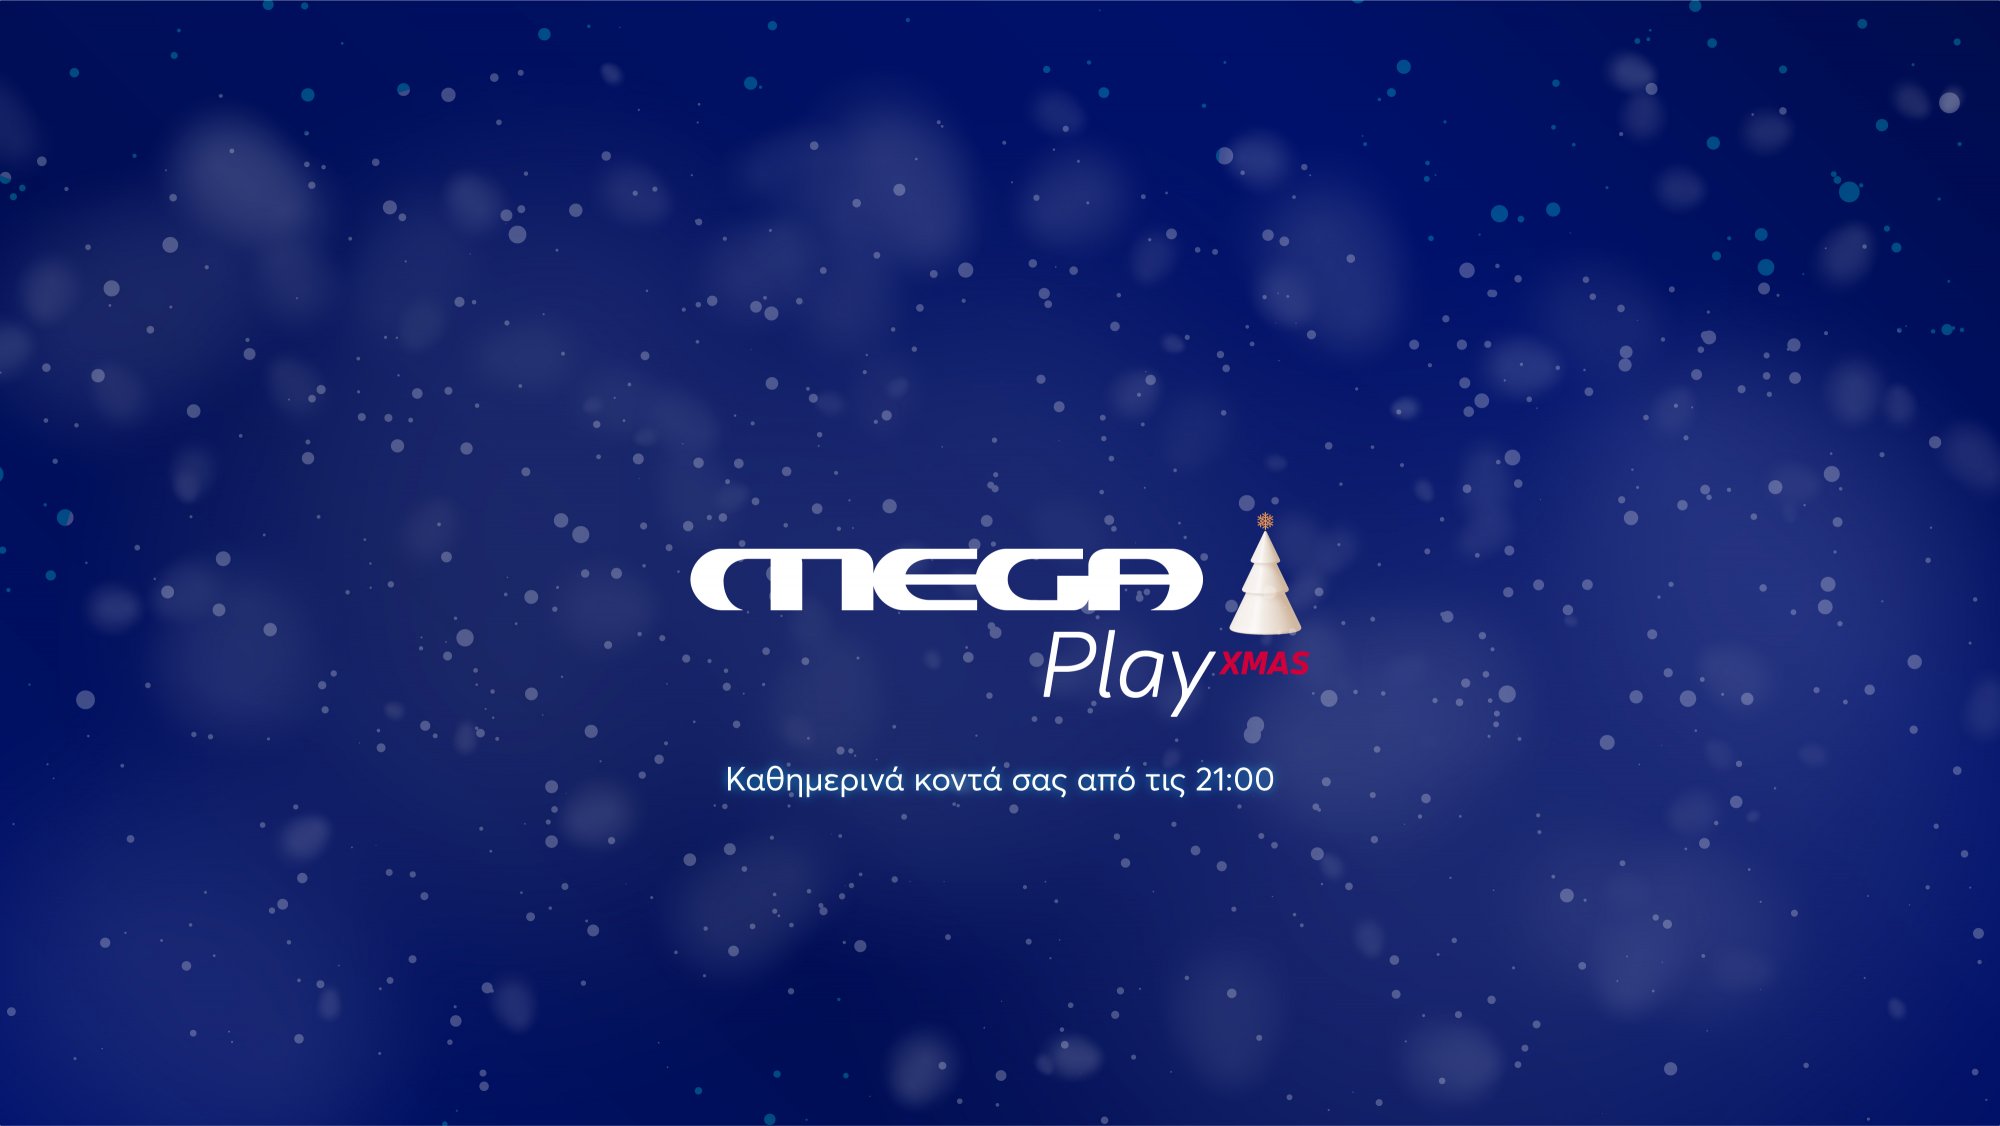 «MEGA PLAY XMAS»: Το νέο pop up χριστουγεννιάτικο κανάλι – Mοναδικές γιορτές με Mega Play και Megatv.com